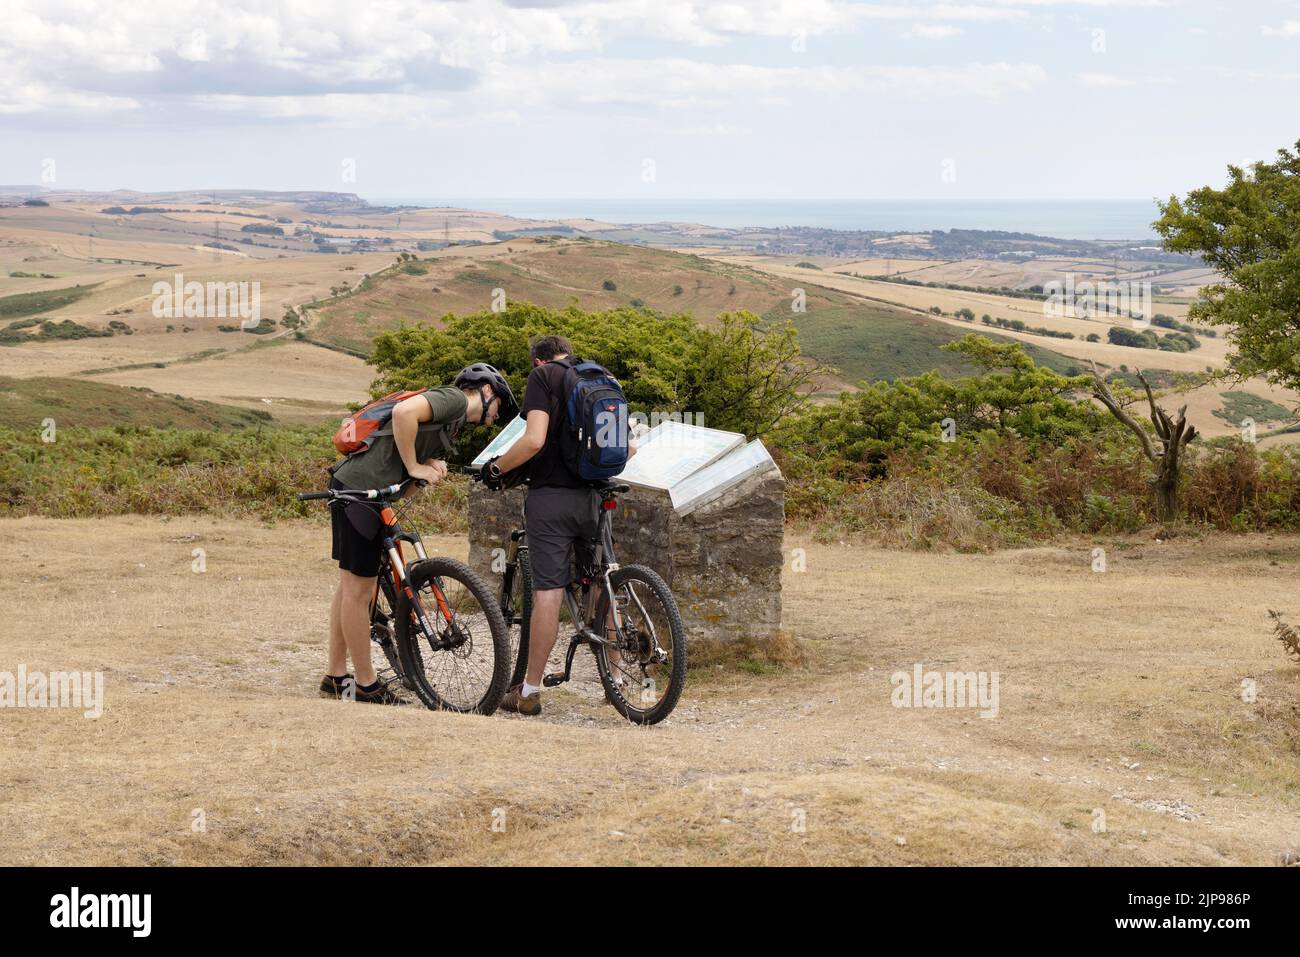 Cyclisme au Royaume-Uni; deux hommes cyclistes âgés de 30s ans, avec leurs vélos au sommet de Black Down à Dorset Countryside, au Royaume-Uni. Exemple de mode de vie sain Banque D'Images